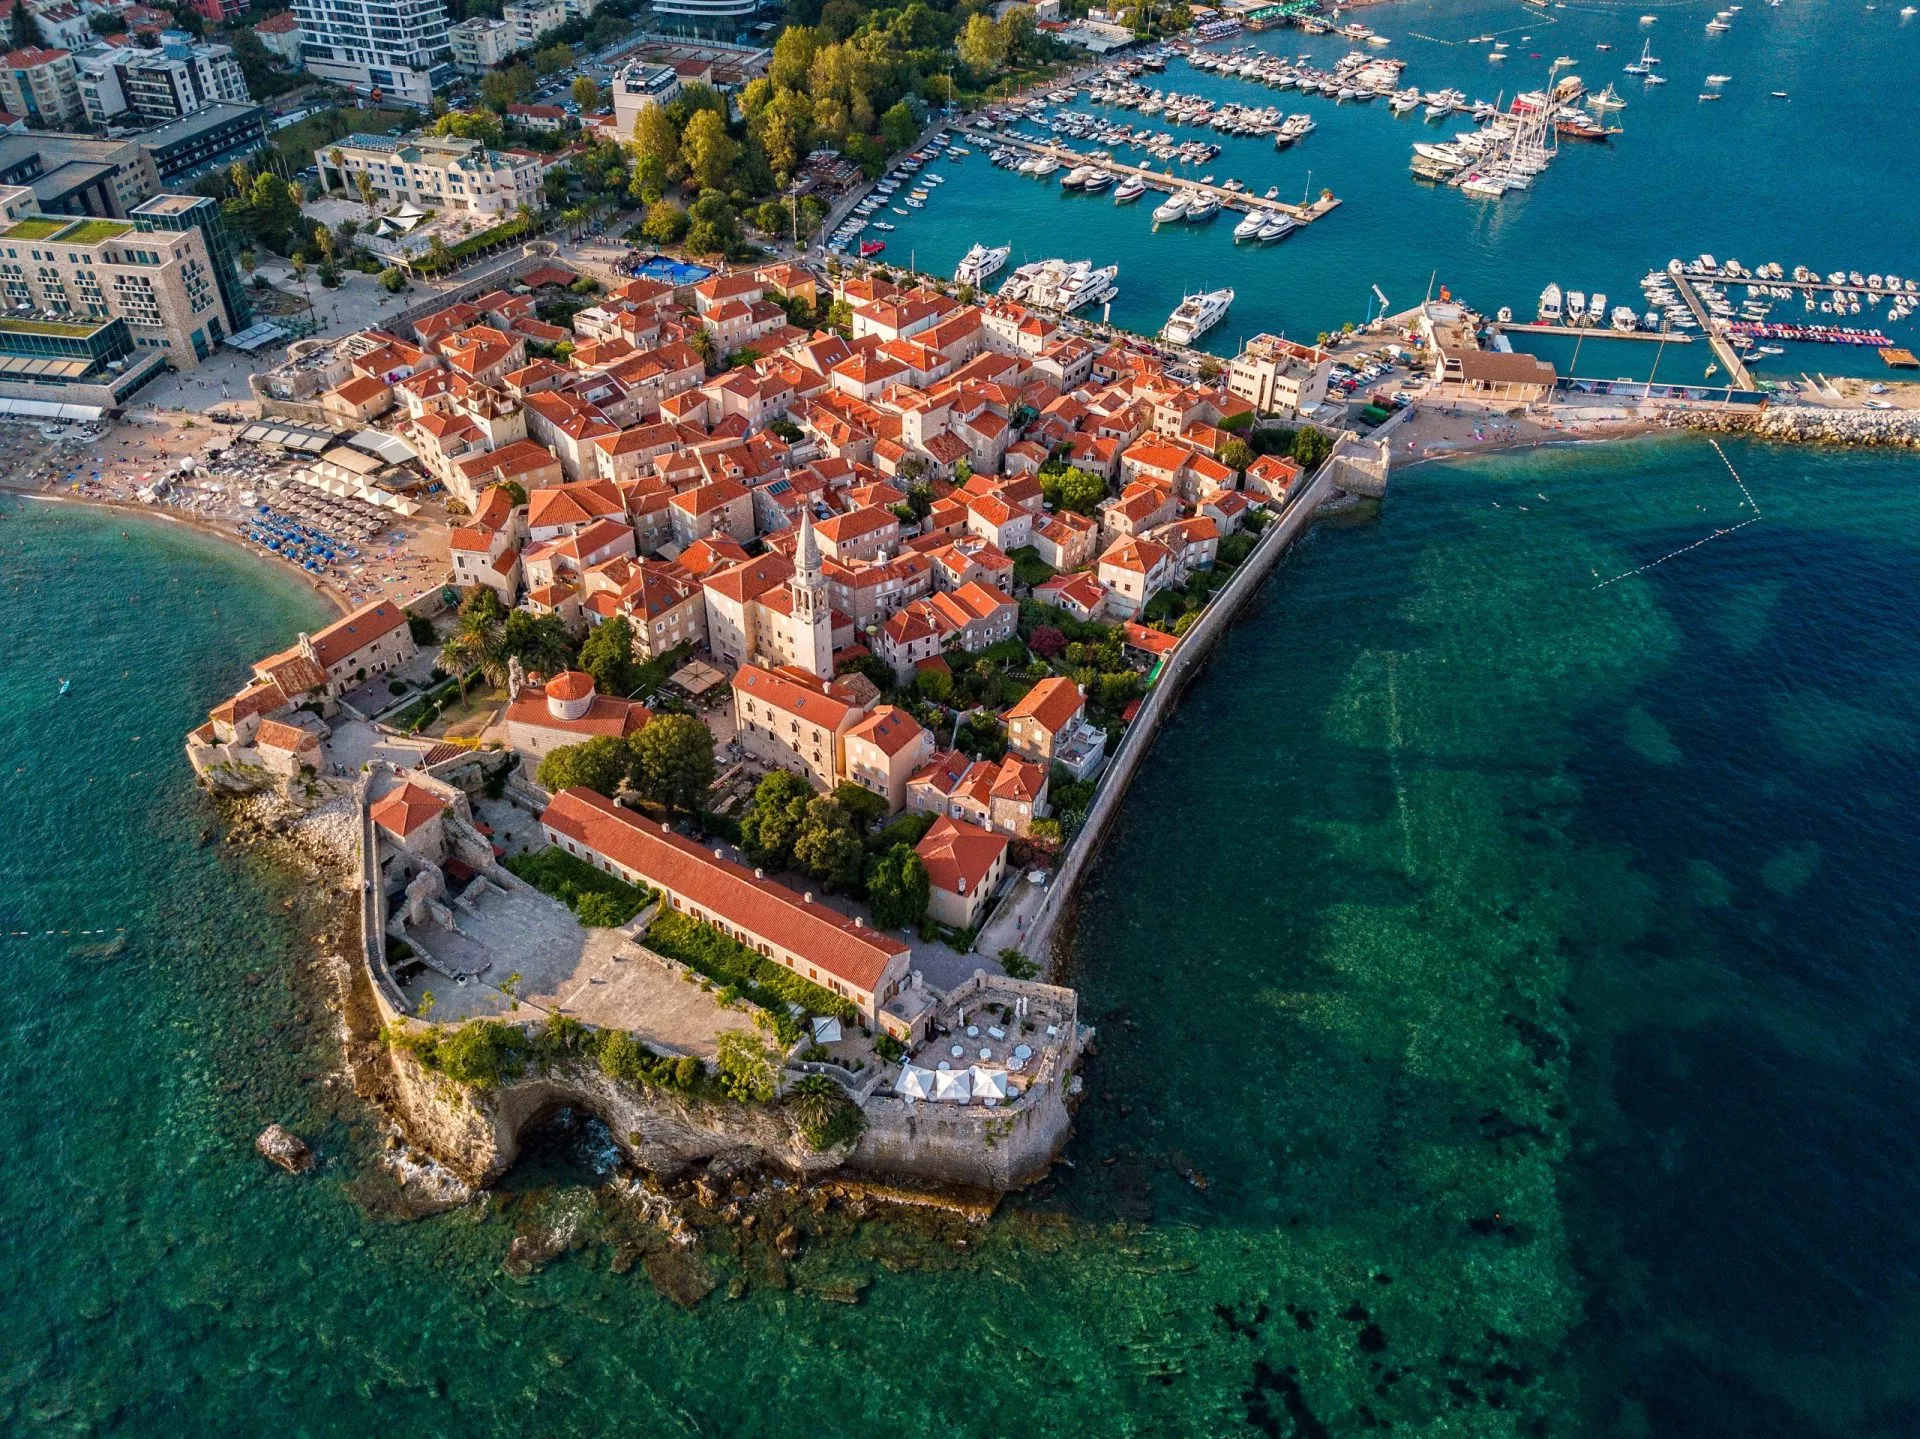 Vista aérea de Budva, la ciudad vieja (stari grad) de Budva, Montenegro. Costa escarpada en el mar Adriático. Centro del turismo montenegrino, ciudad medieval amurallada bien conservada, playas de arena.